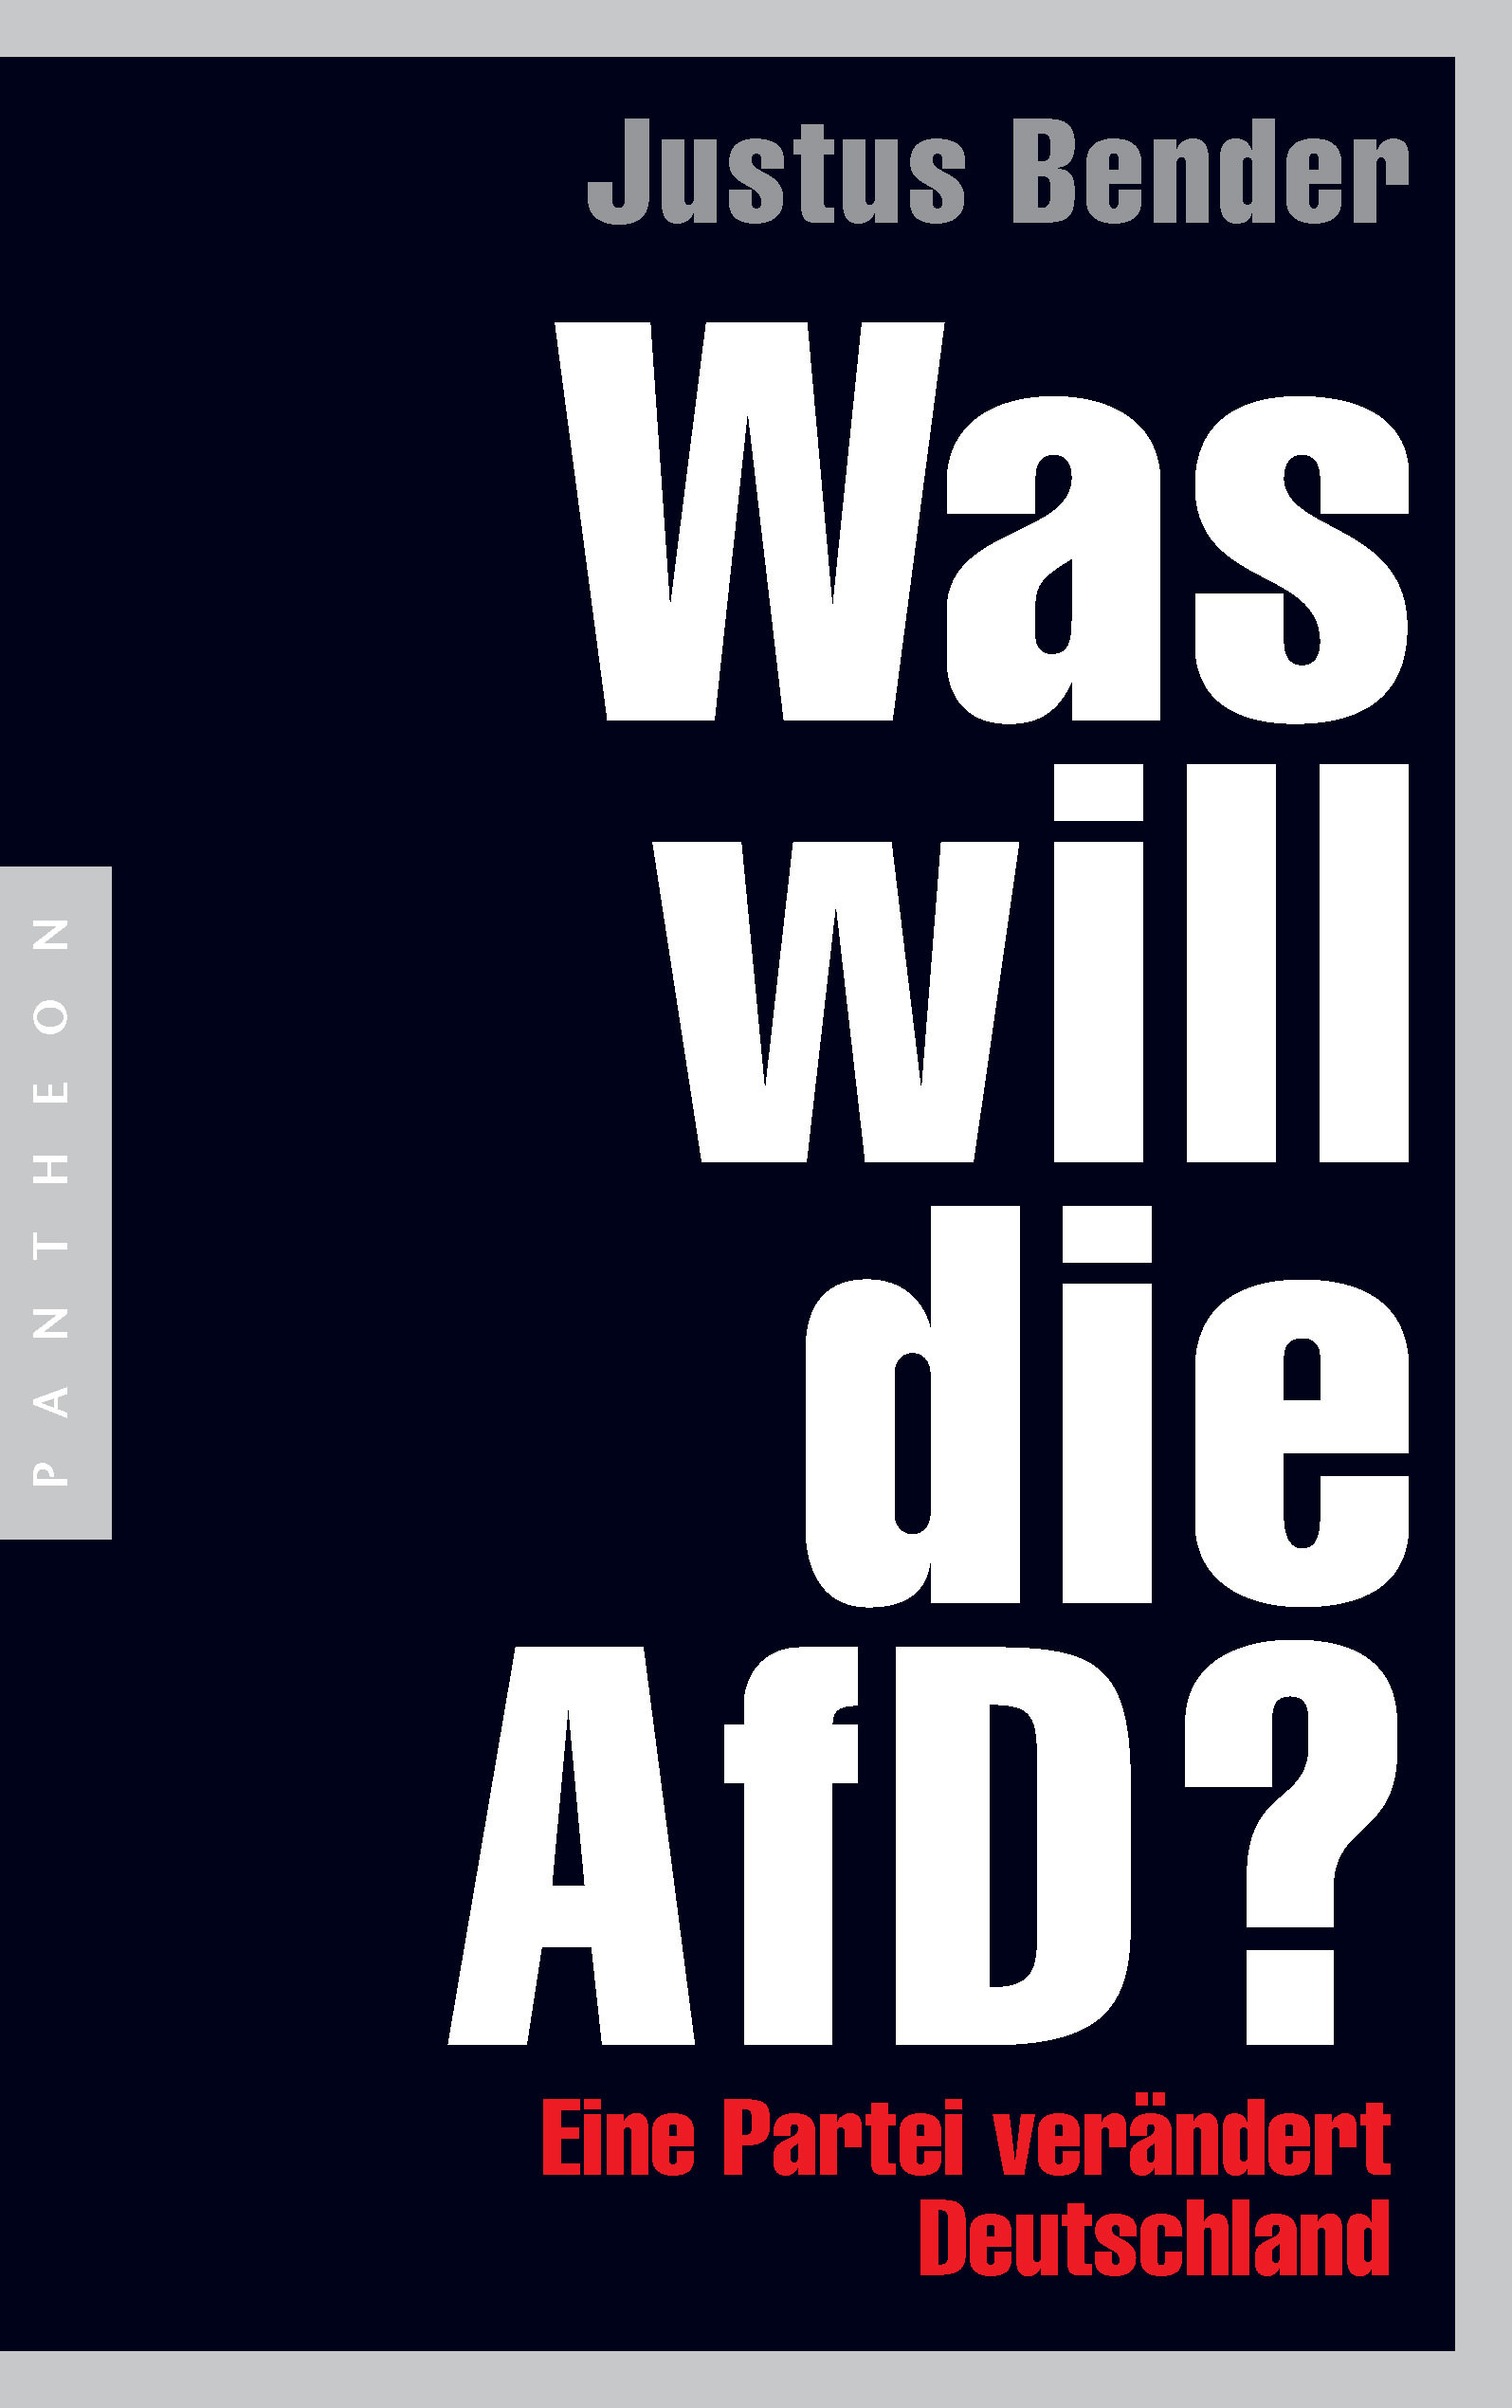 Buchcover: Justus Bener: Was will die AfD? Pantheon Verlag